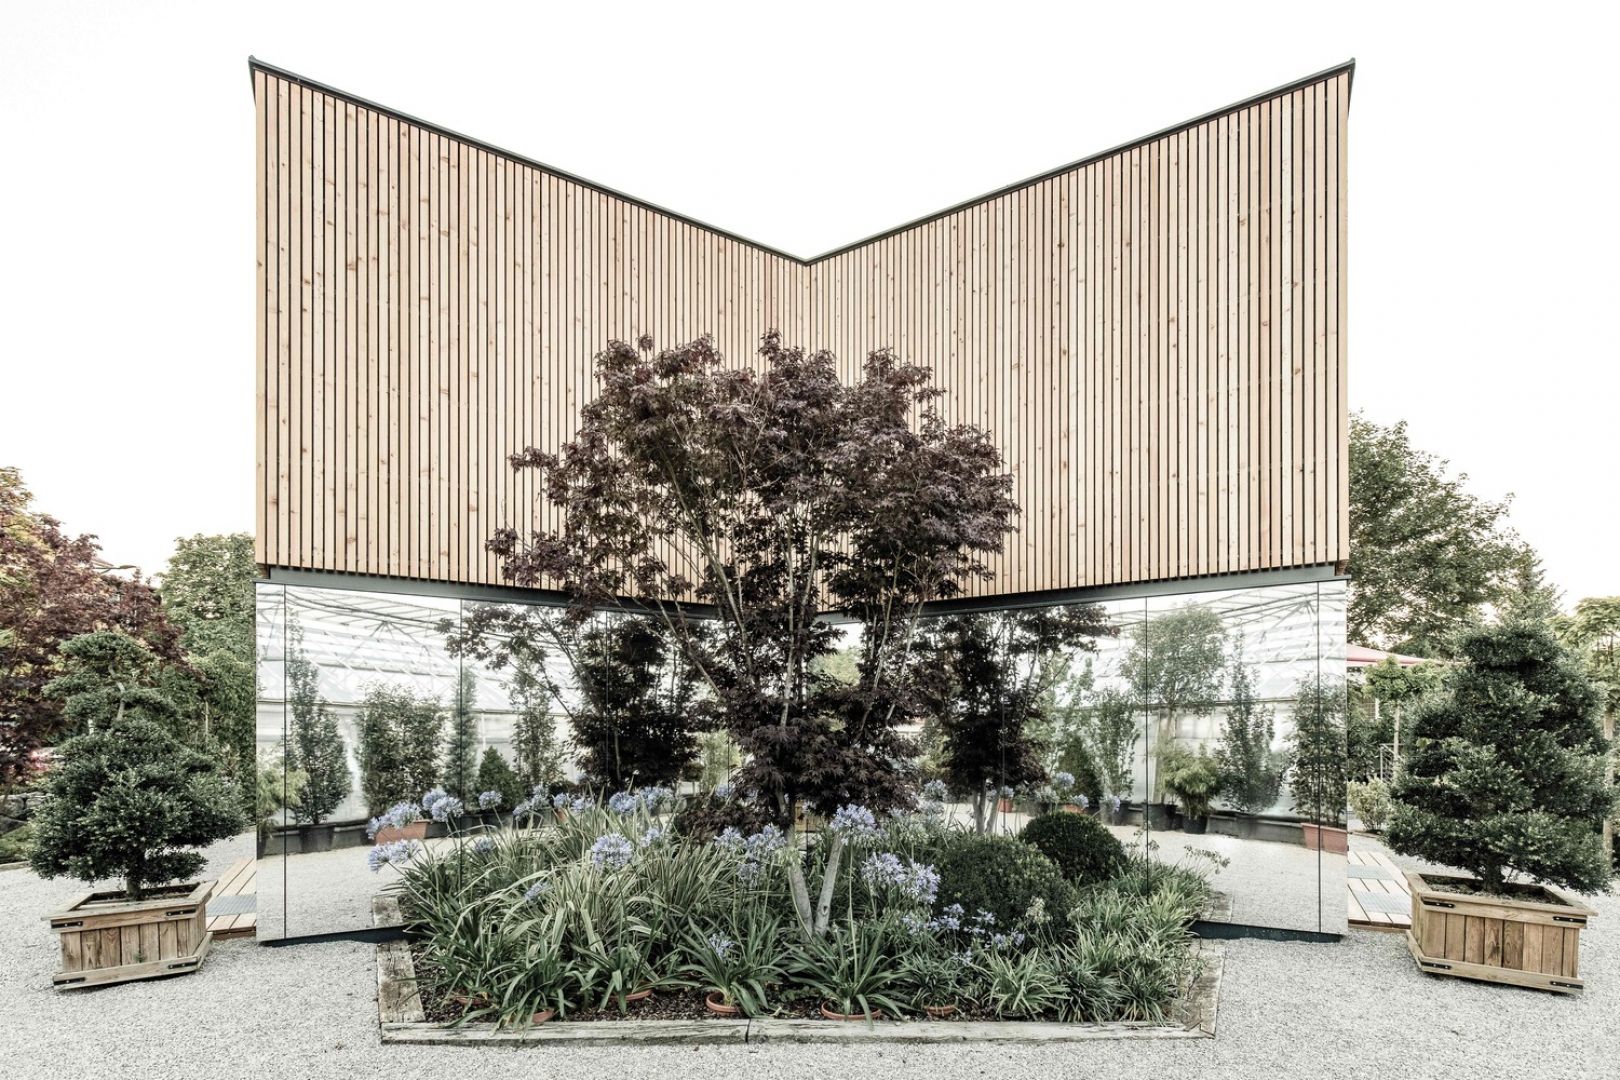 Elewacja domu w połowie pokryta jest specjalnymi lustrzanymi panelami, w której odbijają się otaczające dom krzewy i drzewa, aby podkreślić więź pomiędzy przestrzenią domu, a naturą. Fot. Bernhard Fiedler - JOSEP